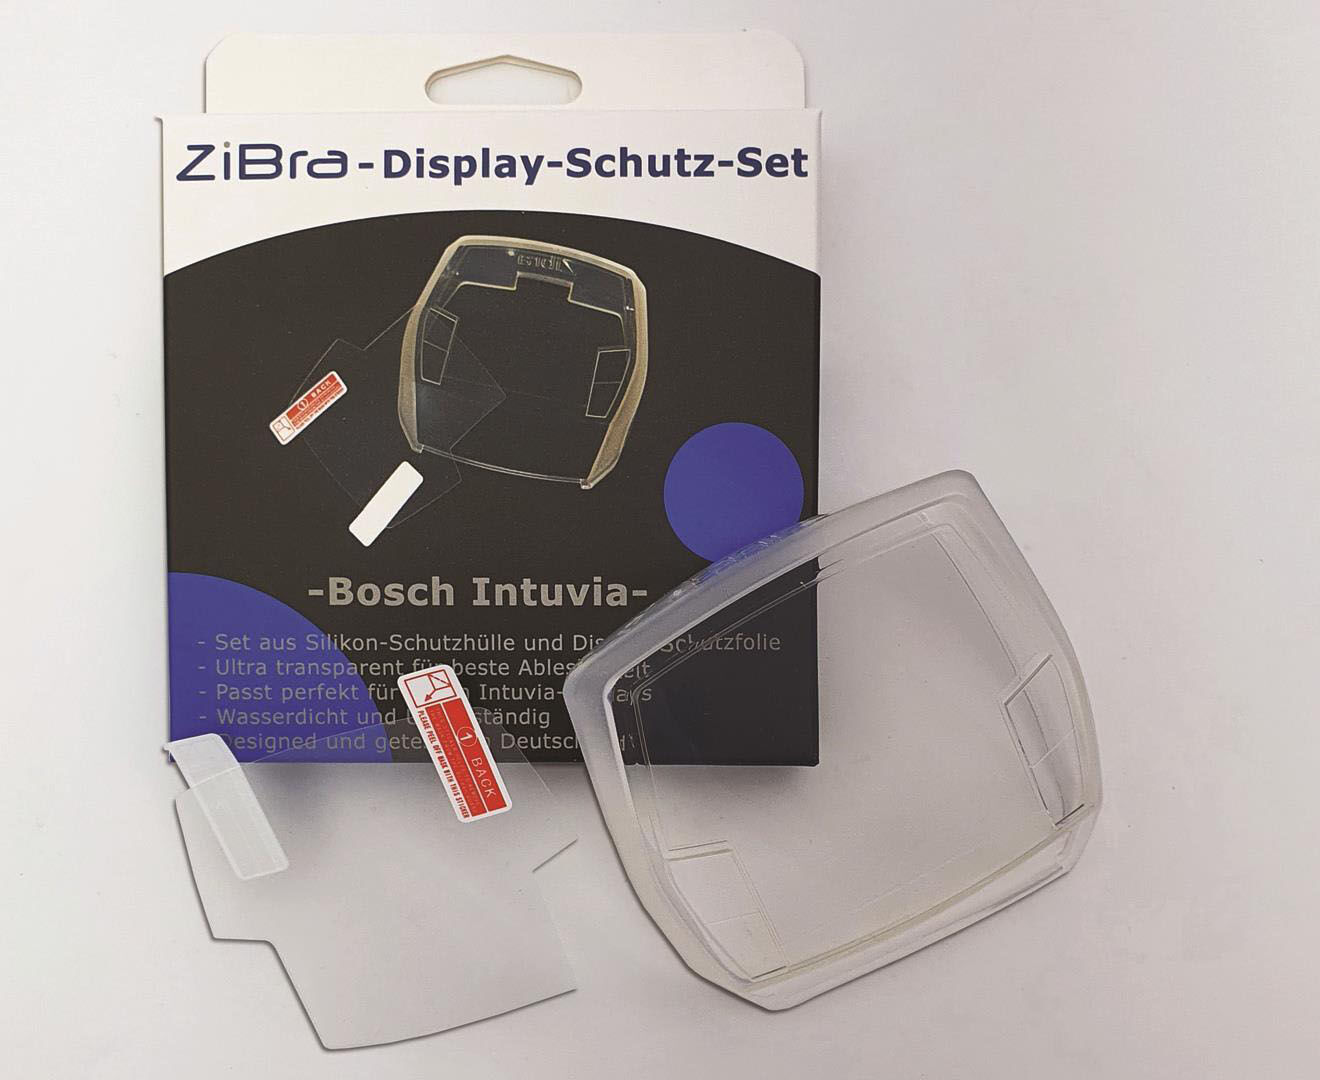 ZiBra Display-Schutz-Set für Bosch Intuvia transparent